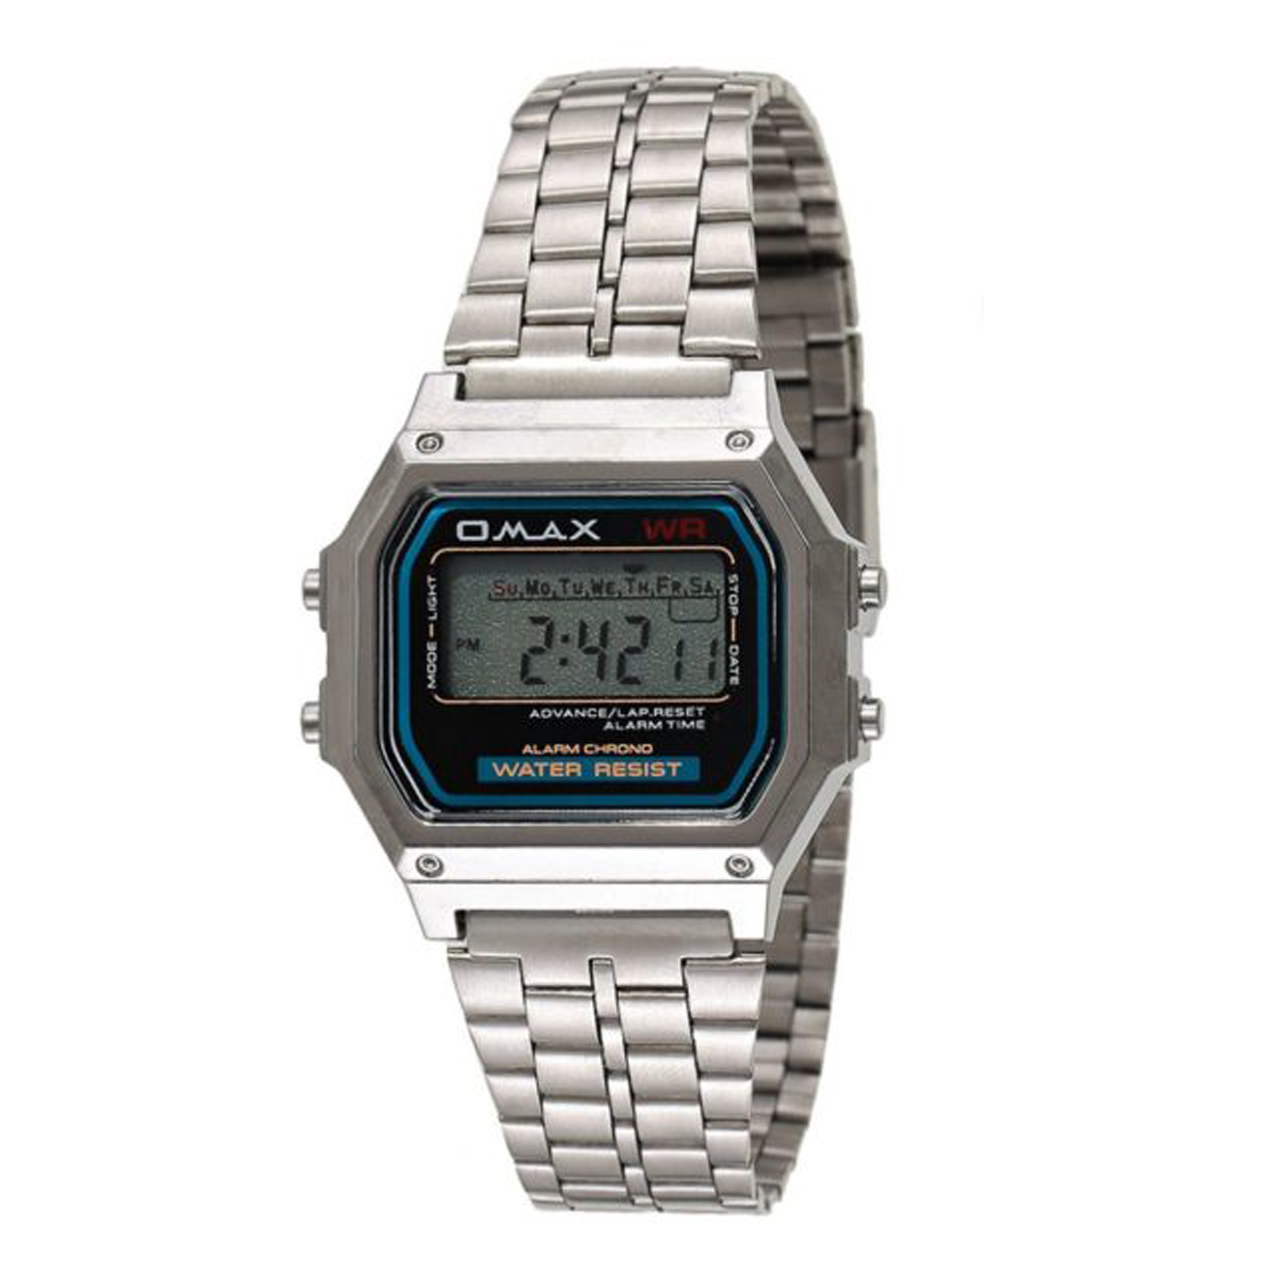 ساعت مچی دیجیتال اوماکس مدل m283 – خرید ساعت مچی